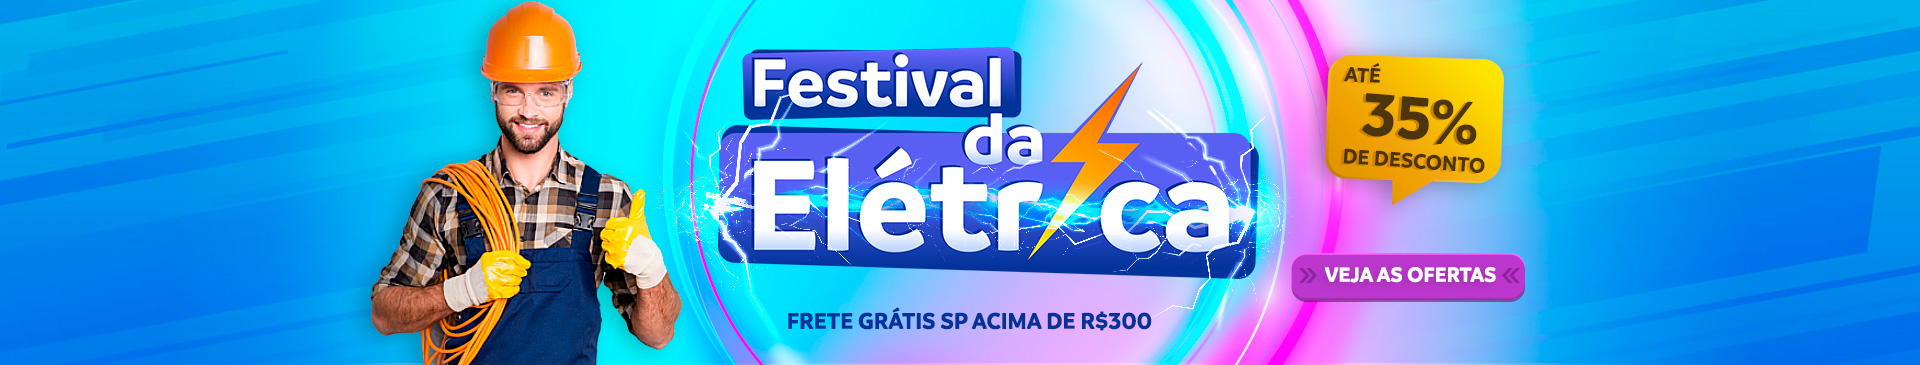 Festival da Elétrica Dimensional - Confira as Ofertas